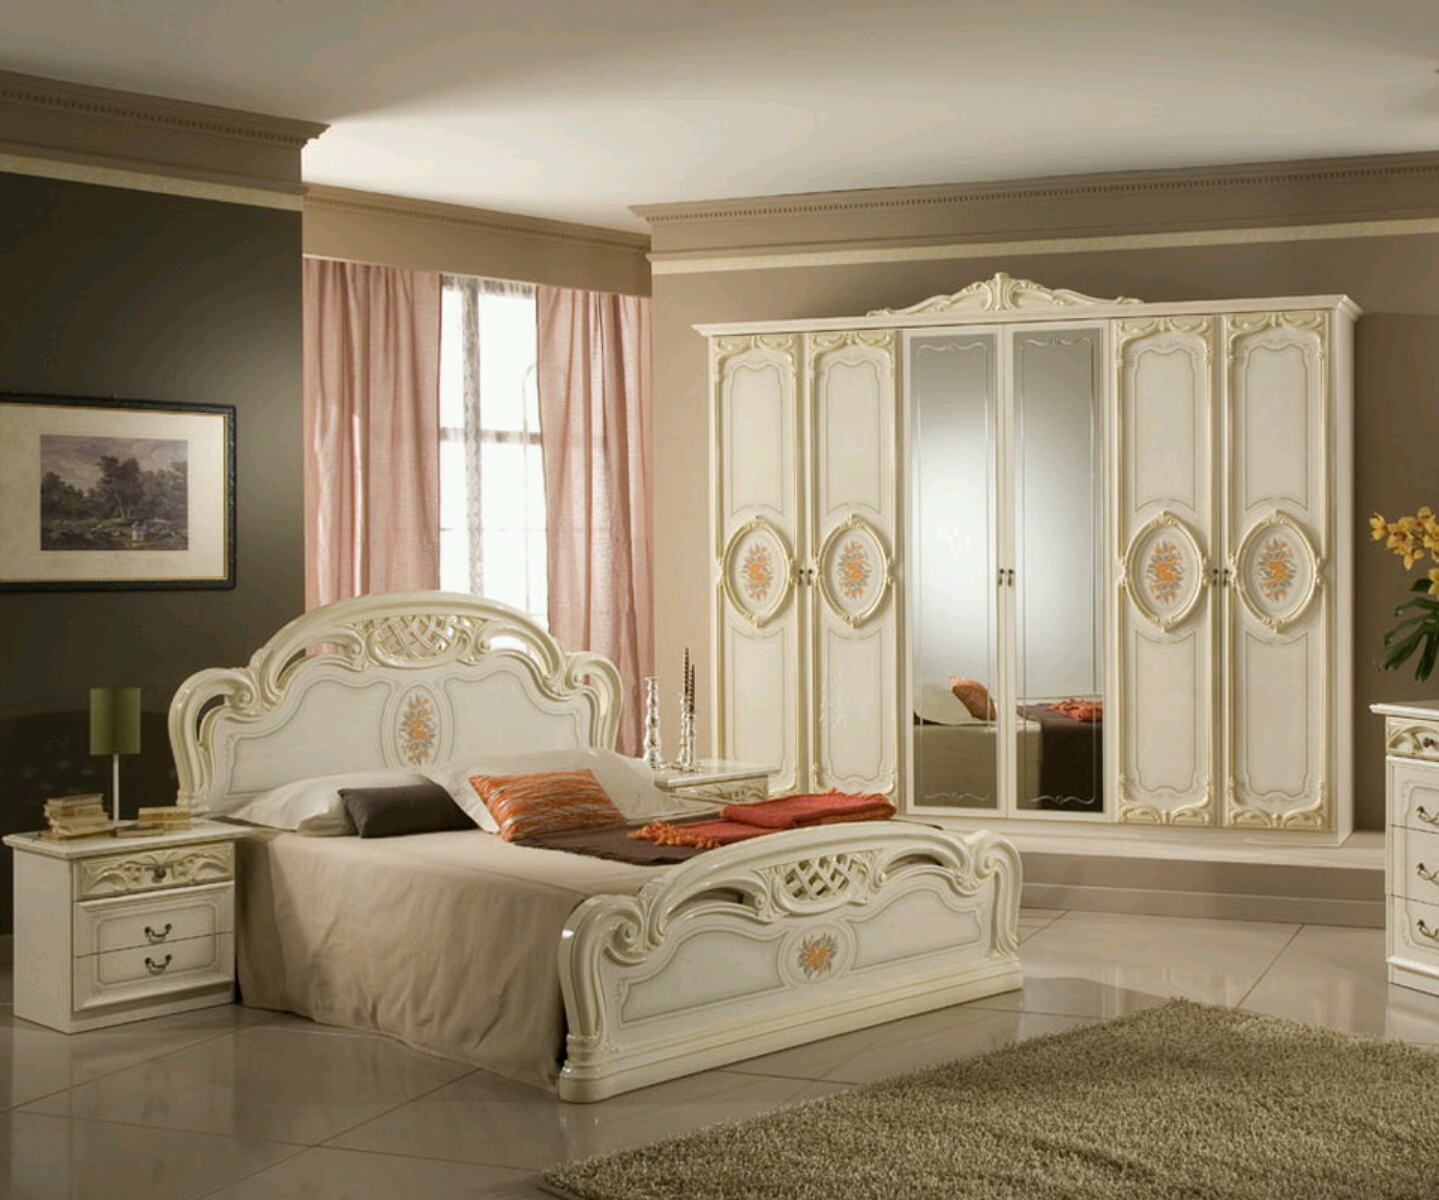 iModerni iluxuryi ibedroomi furniture designs ideas Furniture 